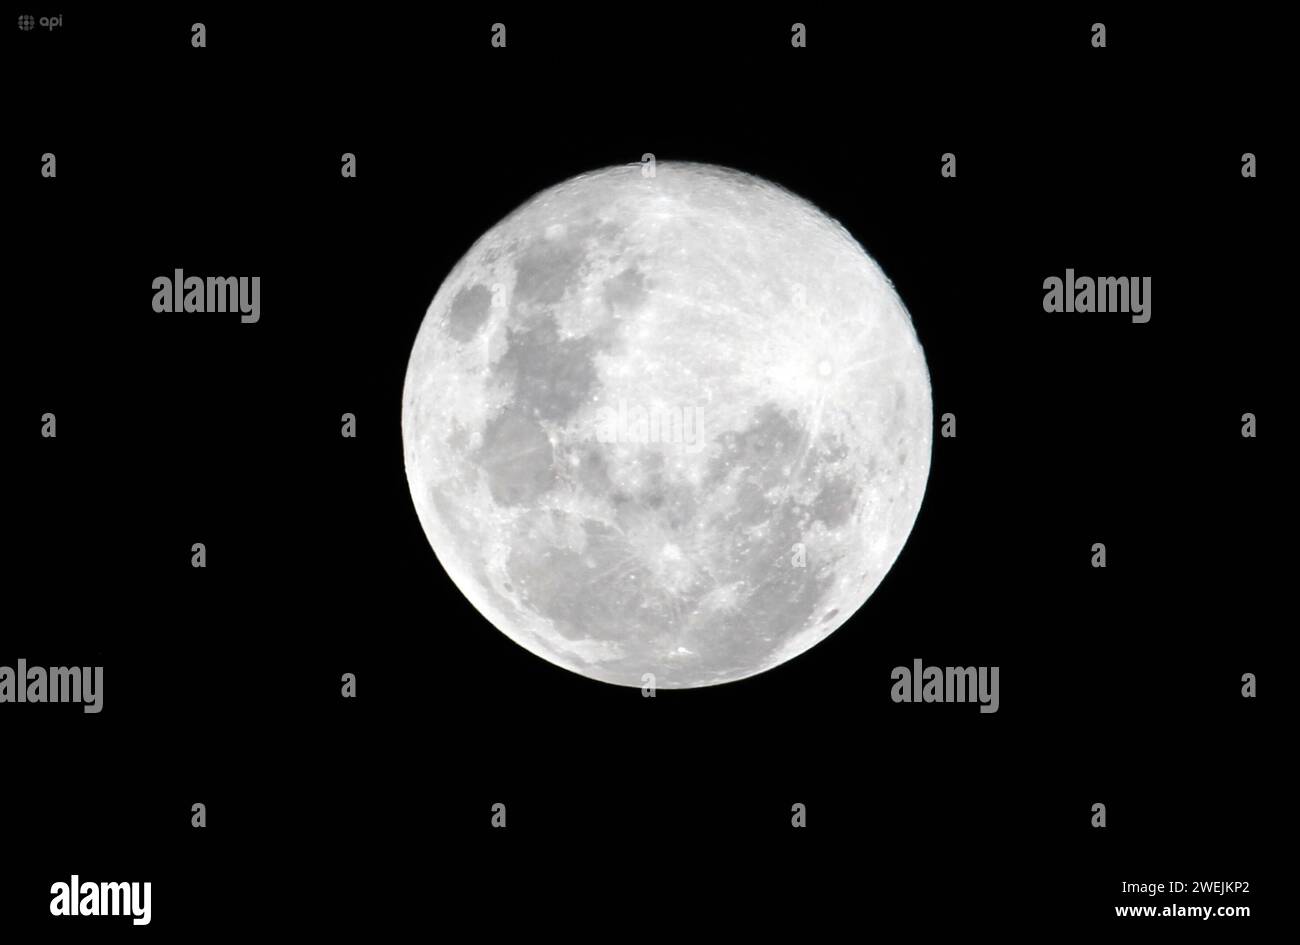 CUENCA-LUNA LLENA-LOBO Cuenca,Ecuador 25 de enro de 2024 La primera luna llena del nuevo ano, conocida como Luna del Lobo, brillo la noche de hoy en el cielo nocturno de Cuenca. Luna llena del Lobo: este jueves 25 de enero se podo apreciarse en Ecuador el primer plenilunio del ano, tambiÃ n llamado la Luna del Lobo, se observa a finales de enero y despierta curiosidad sobre el origen de su nombre. foto Boris Romoleroux/API. SOI-CUENCA-LUNALLENA-LOBO-7ceed3696aa73d1430cda6f3fca01780 *** CUENCA LUNA LLENA LOBO Cuenca, Ecuador January 25, 2024 The first full moon of the new year, known as the Wol Stock Photo